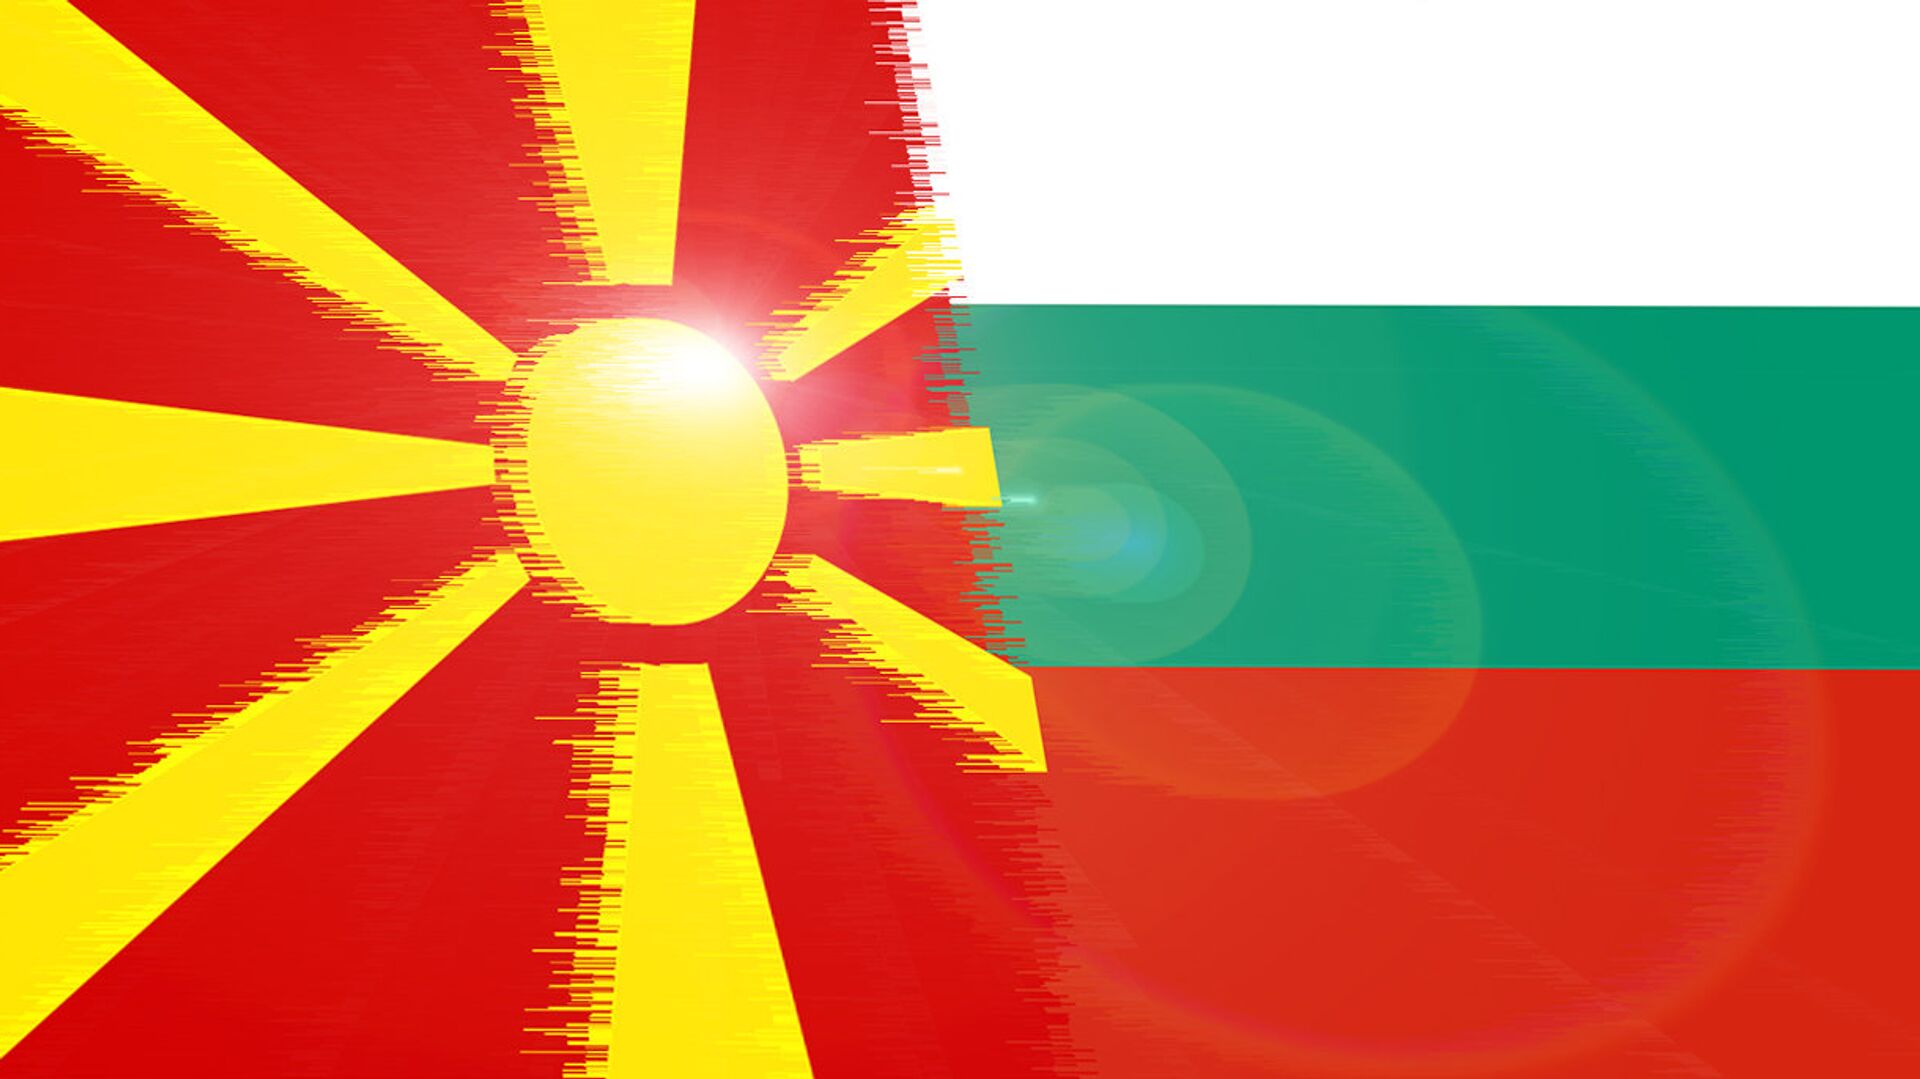 Zastave Makedonije i Bugarske - Sputnik Srbija, 1920, 30.11.2021